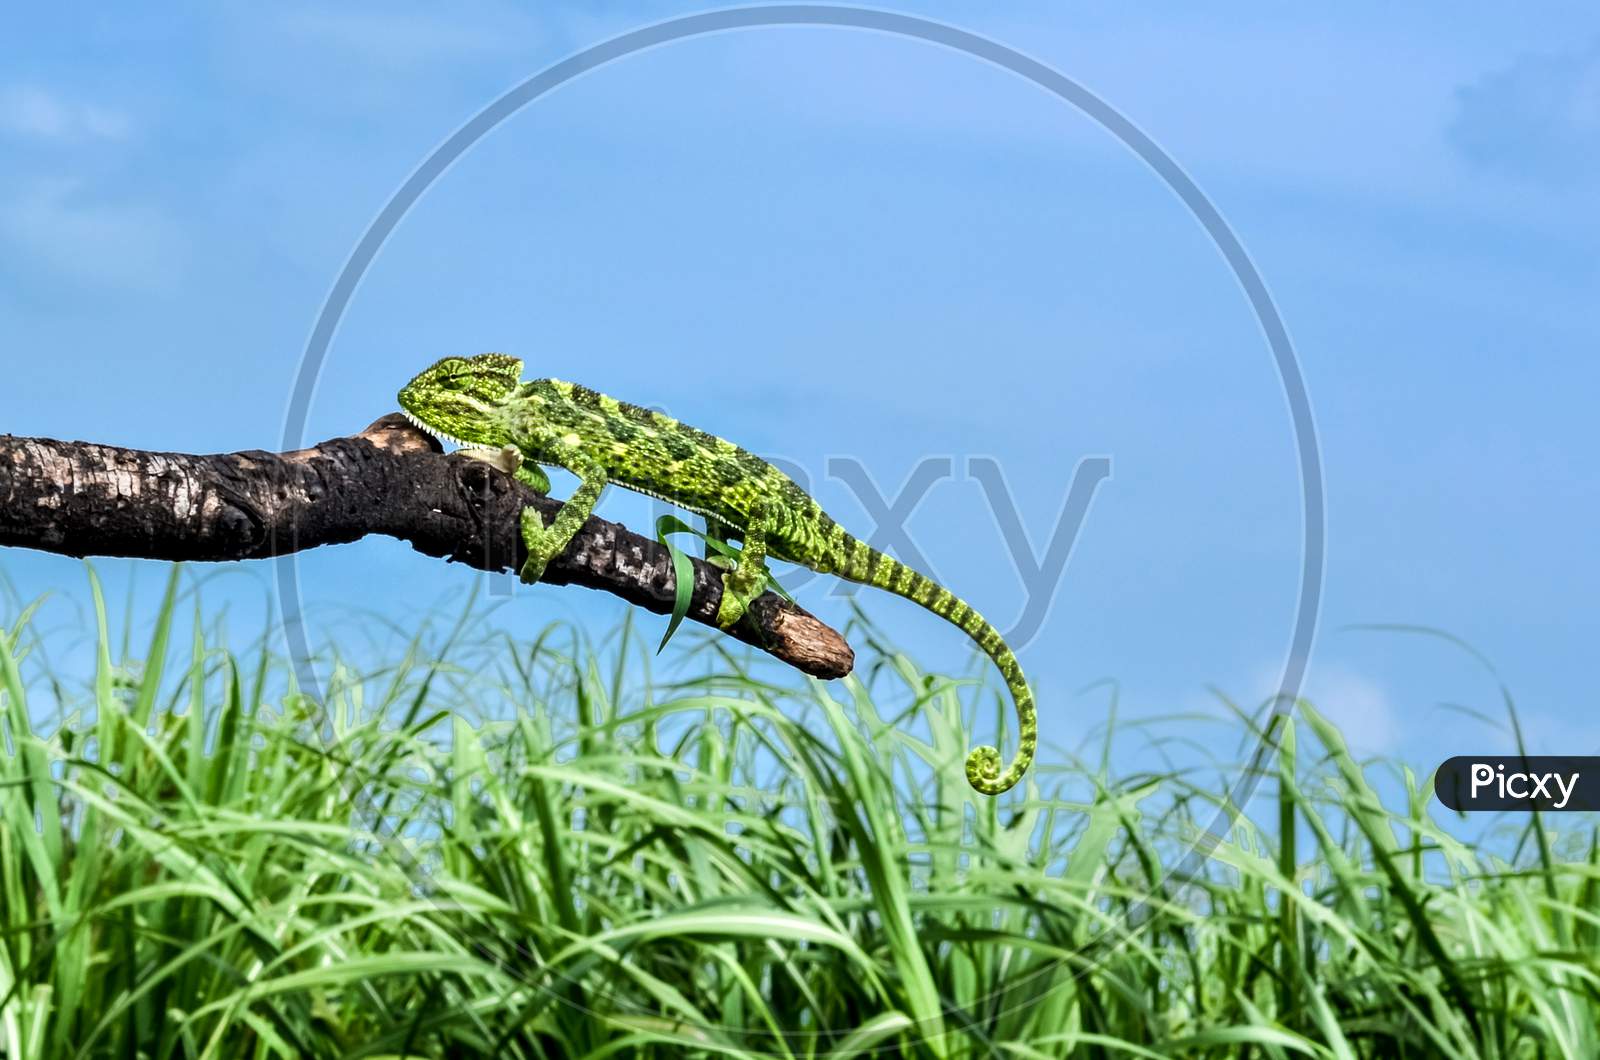 Indian Green Chameleon